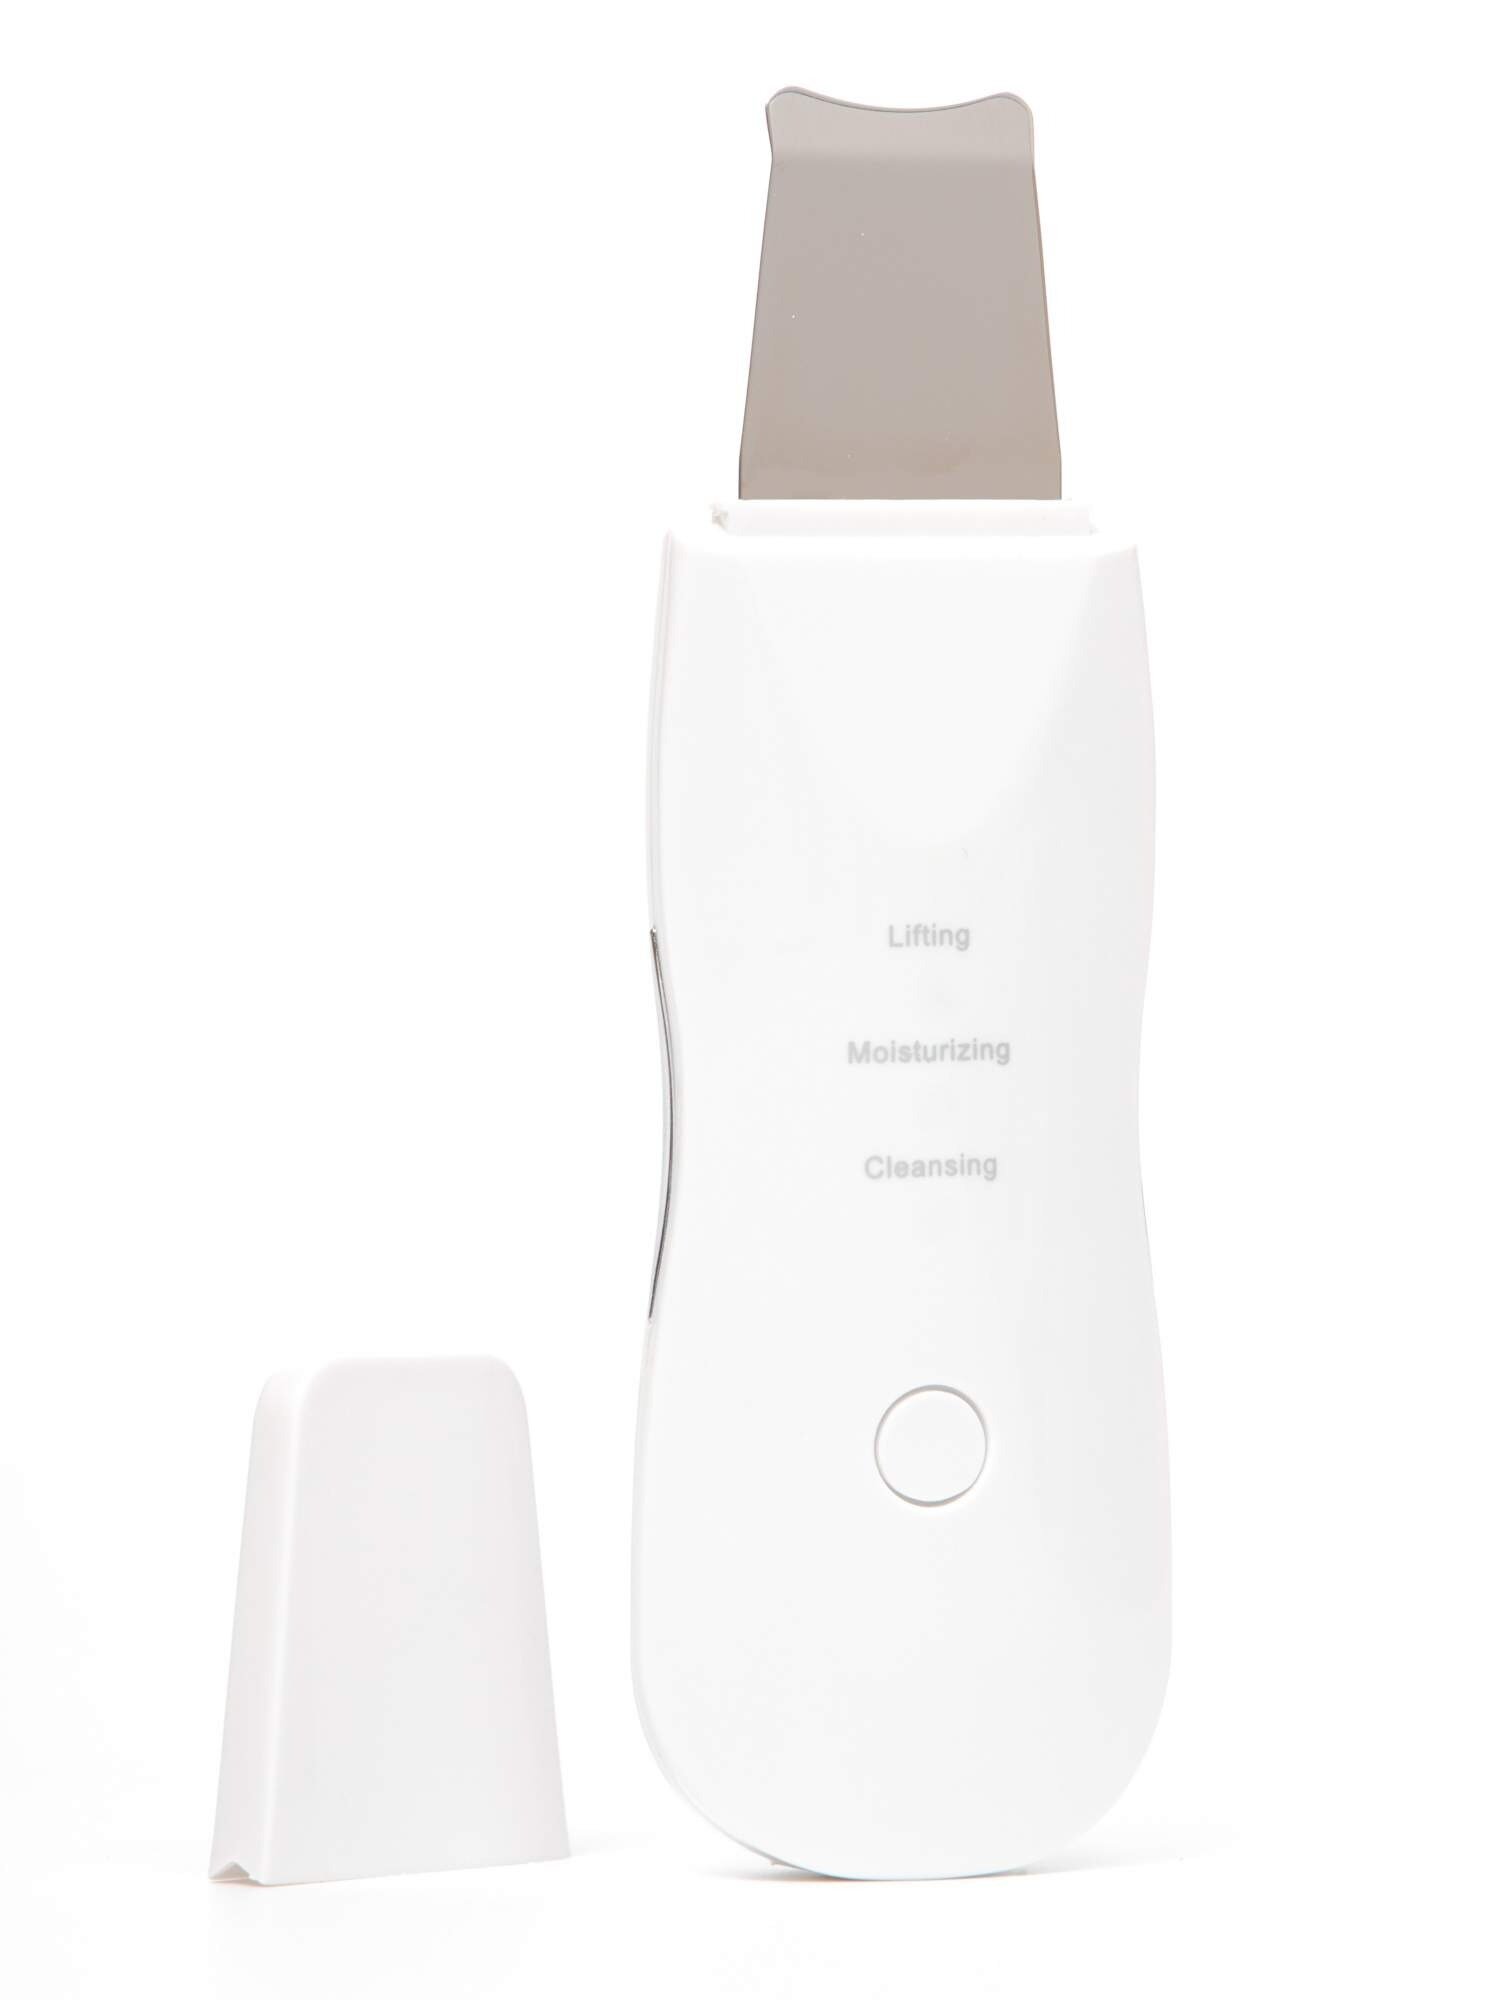 Ультразвуковой аппарат Sonic Skin Scrubber скрабер для чистки лица, белый